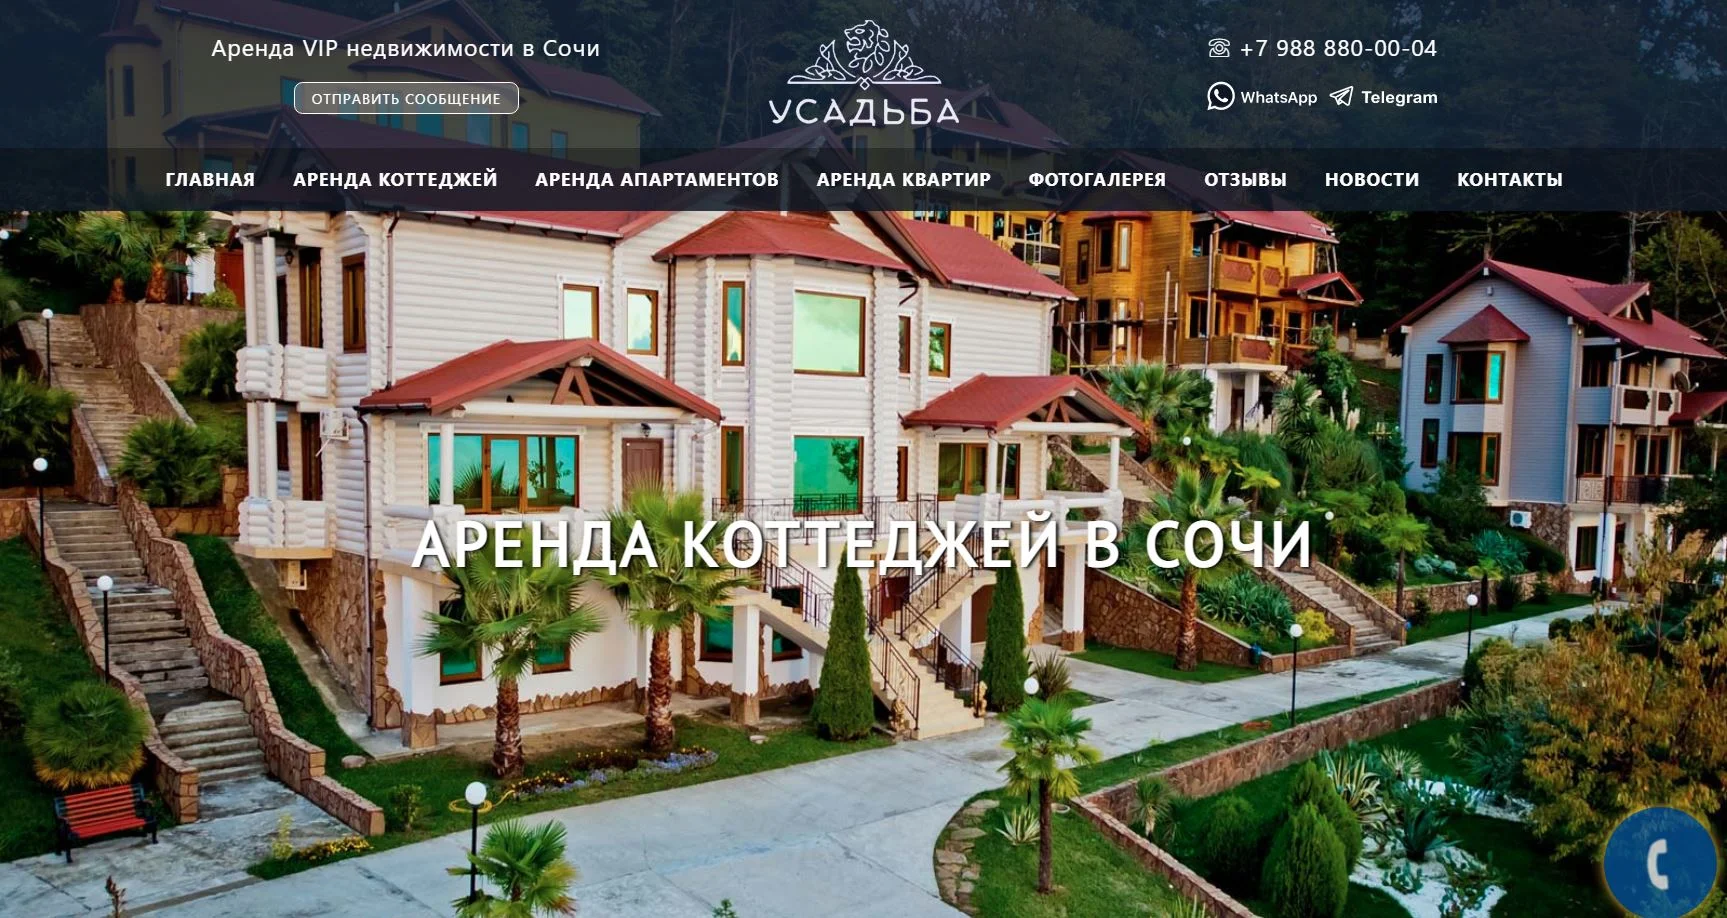 Создание сайта недвижимости в Сочи